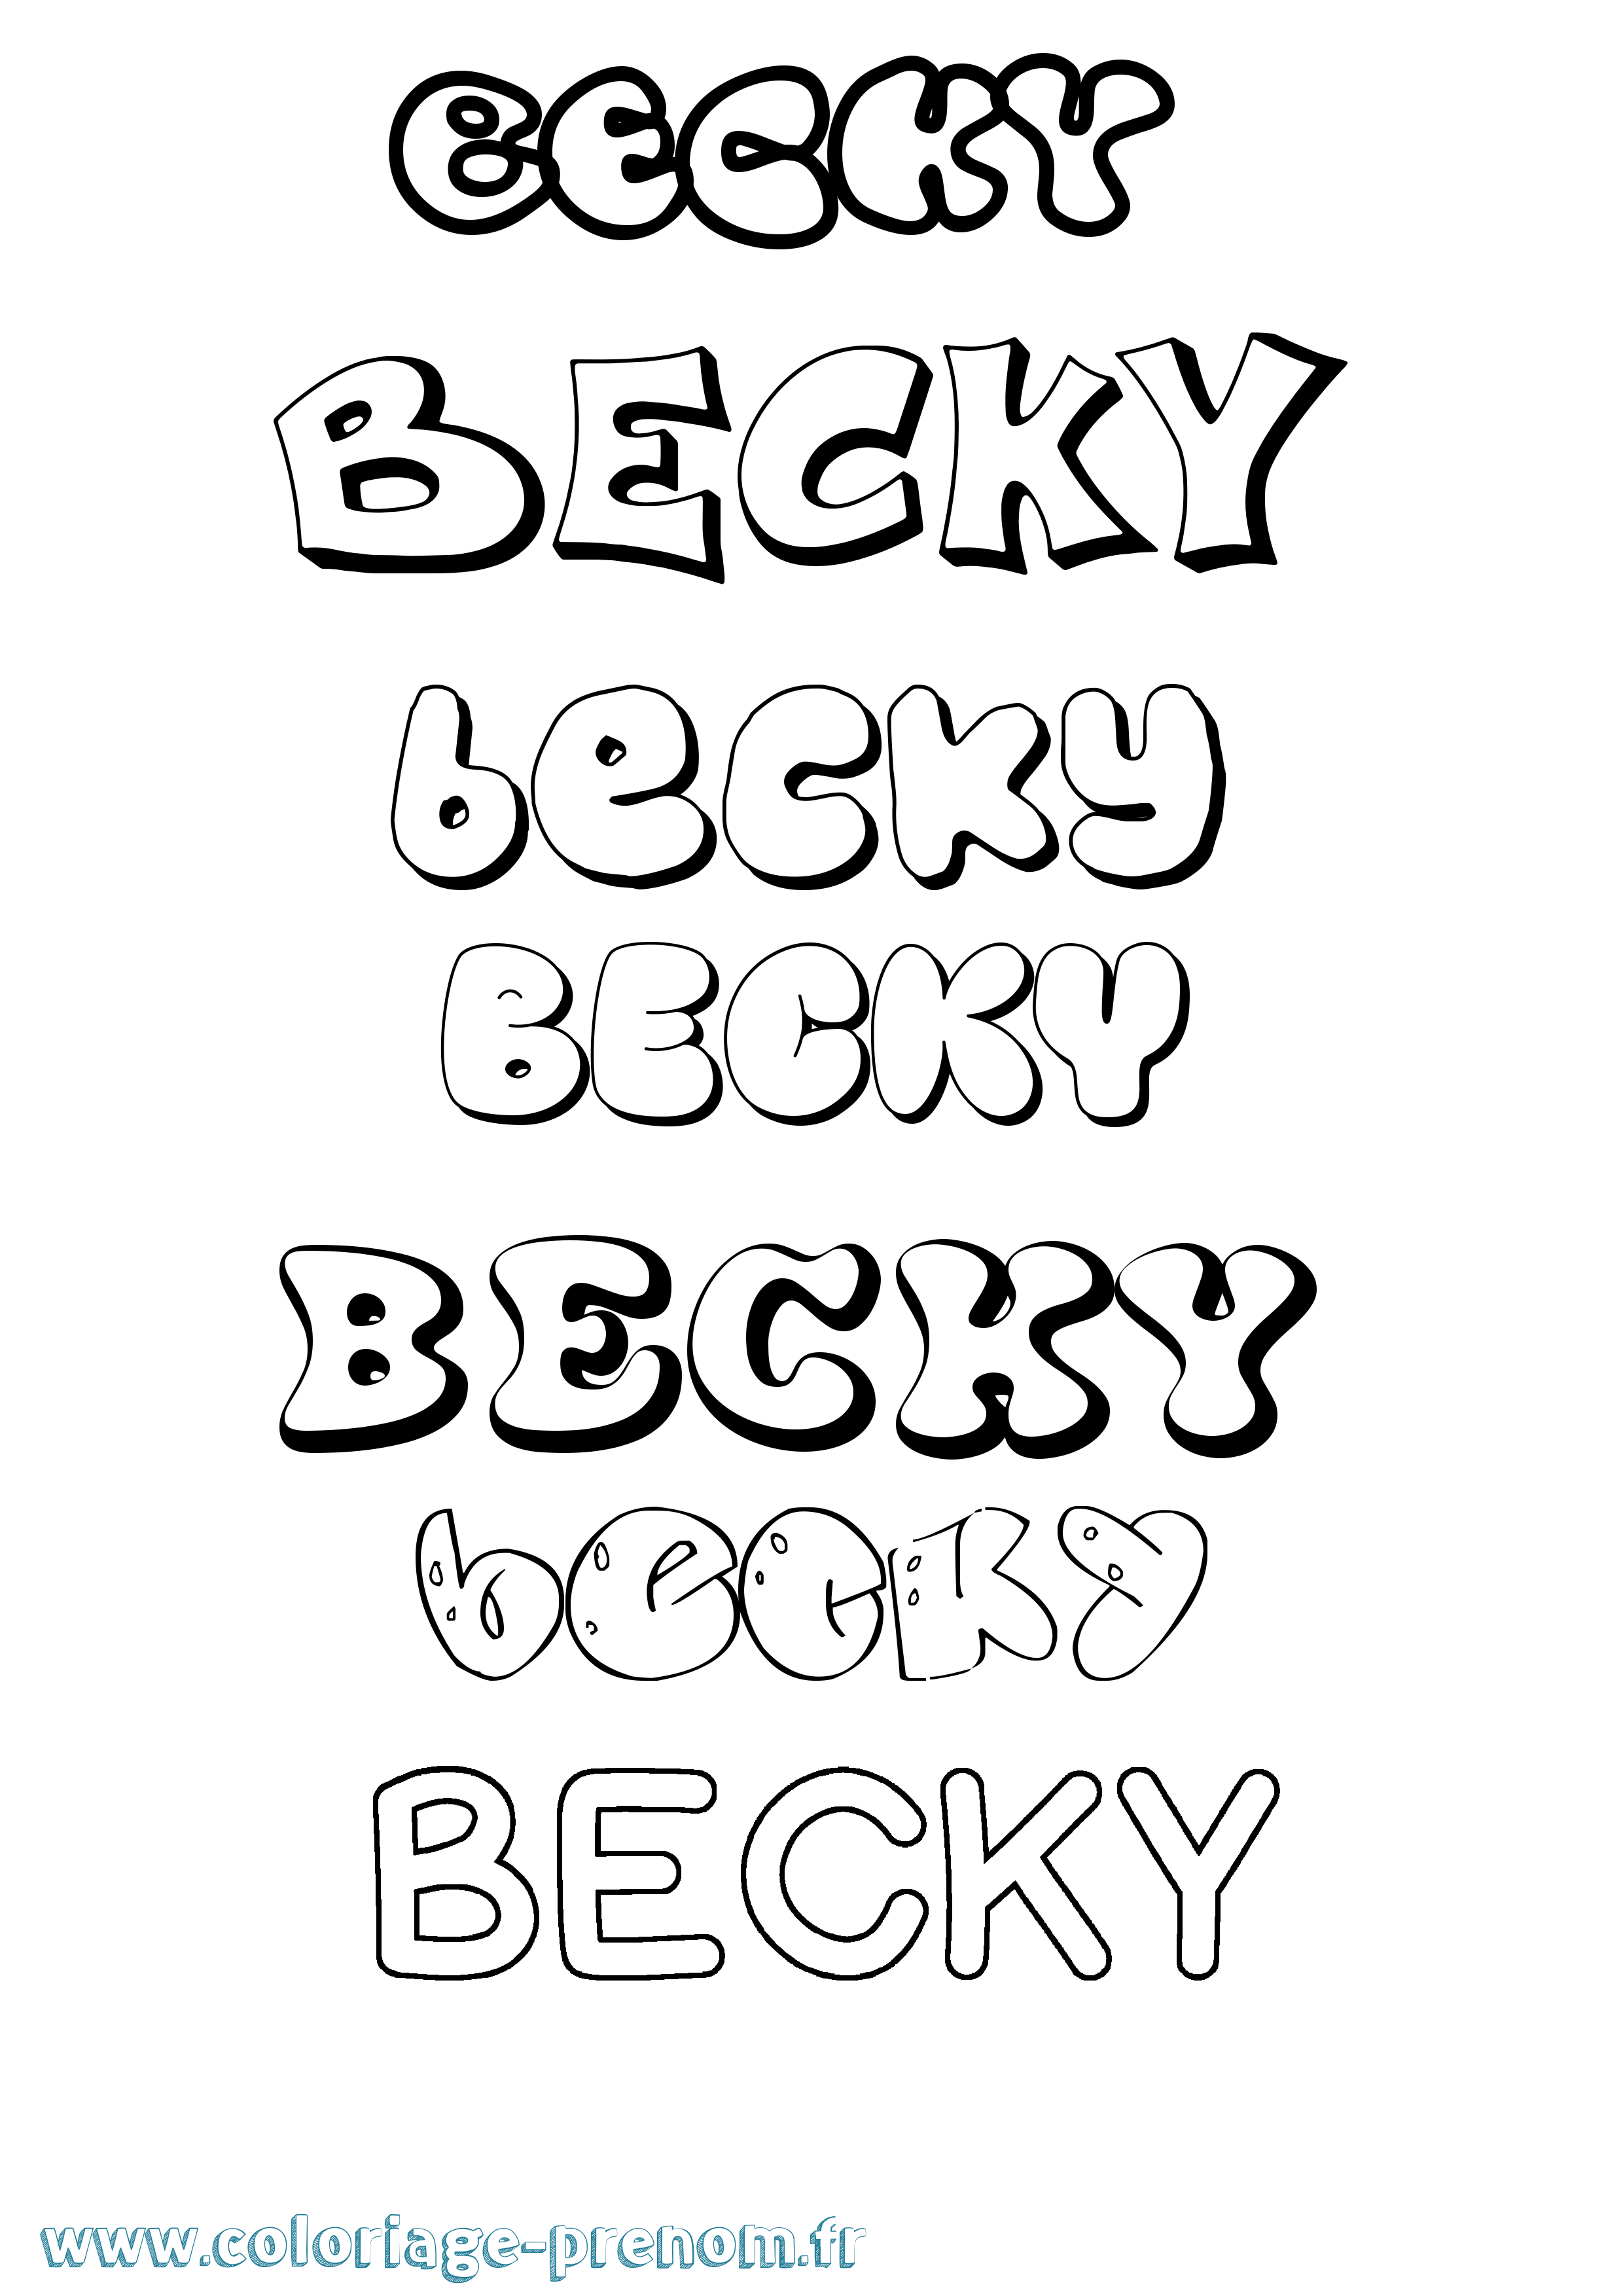 Coloriage prénom Becky Bubble